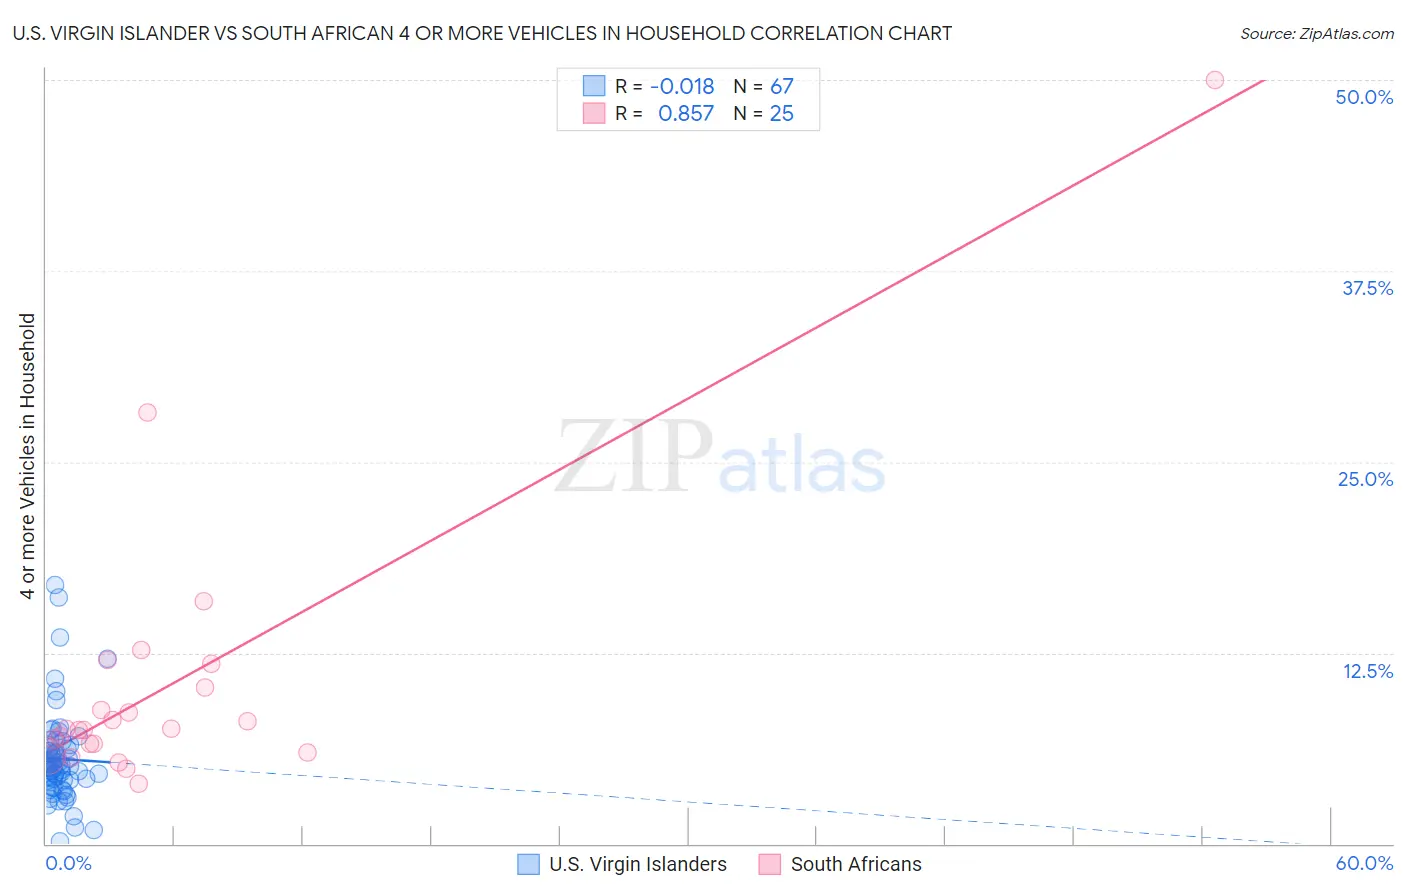 U.S. Virgin Islander vs South African 4 or more Vehicles in Household